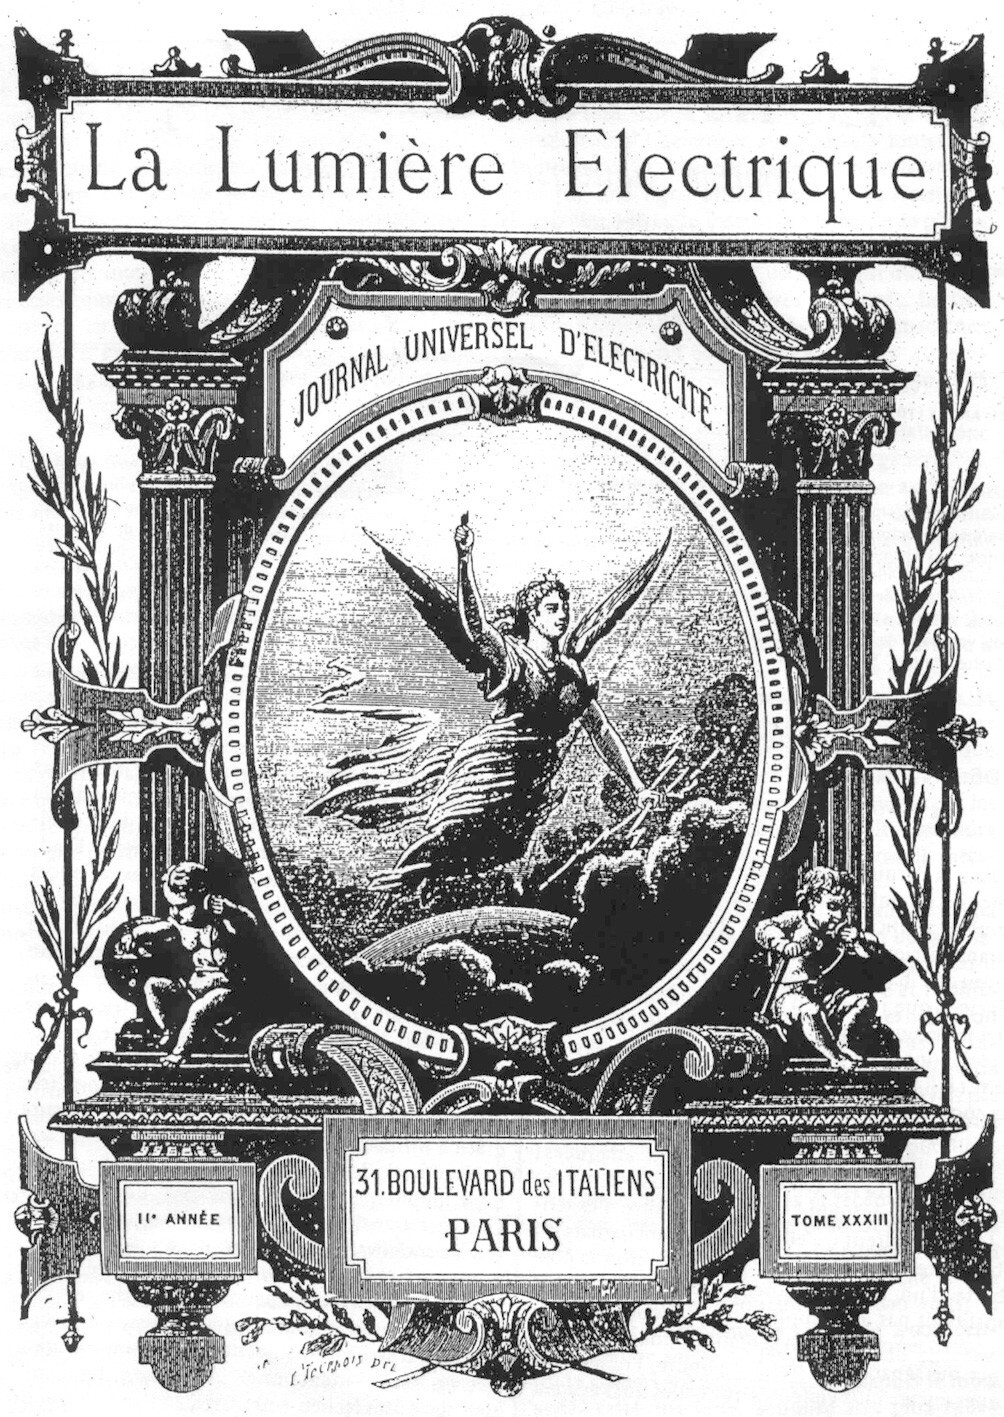 Fada elétrica na capa da revista Lumière-Electrique, 1887
